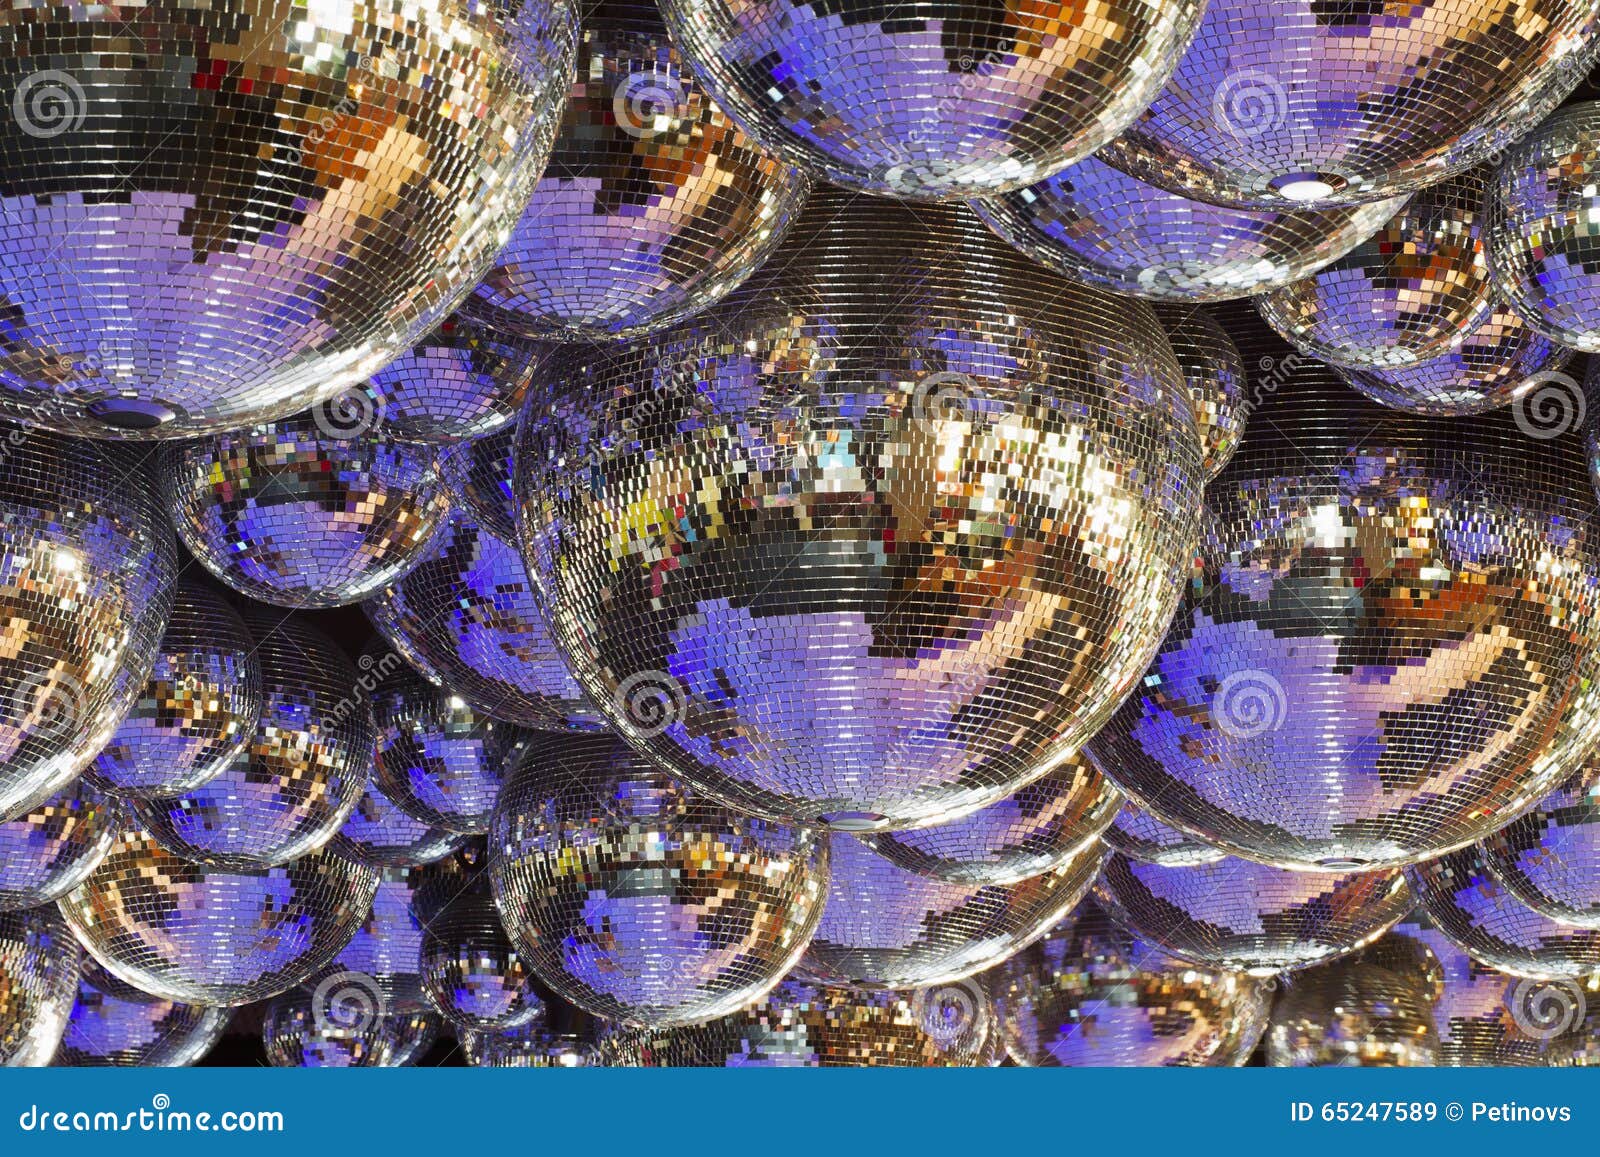 several disco balls